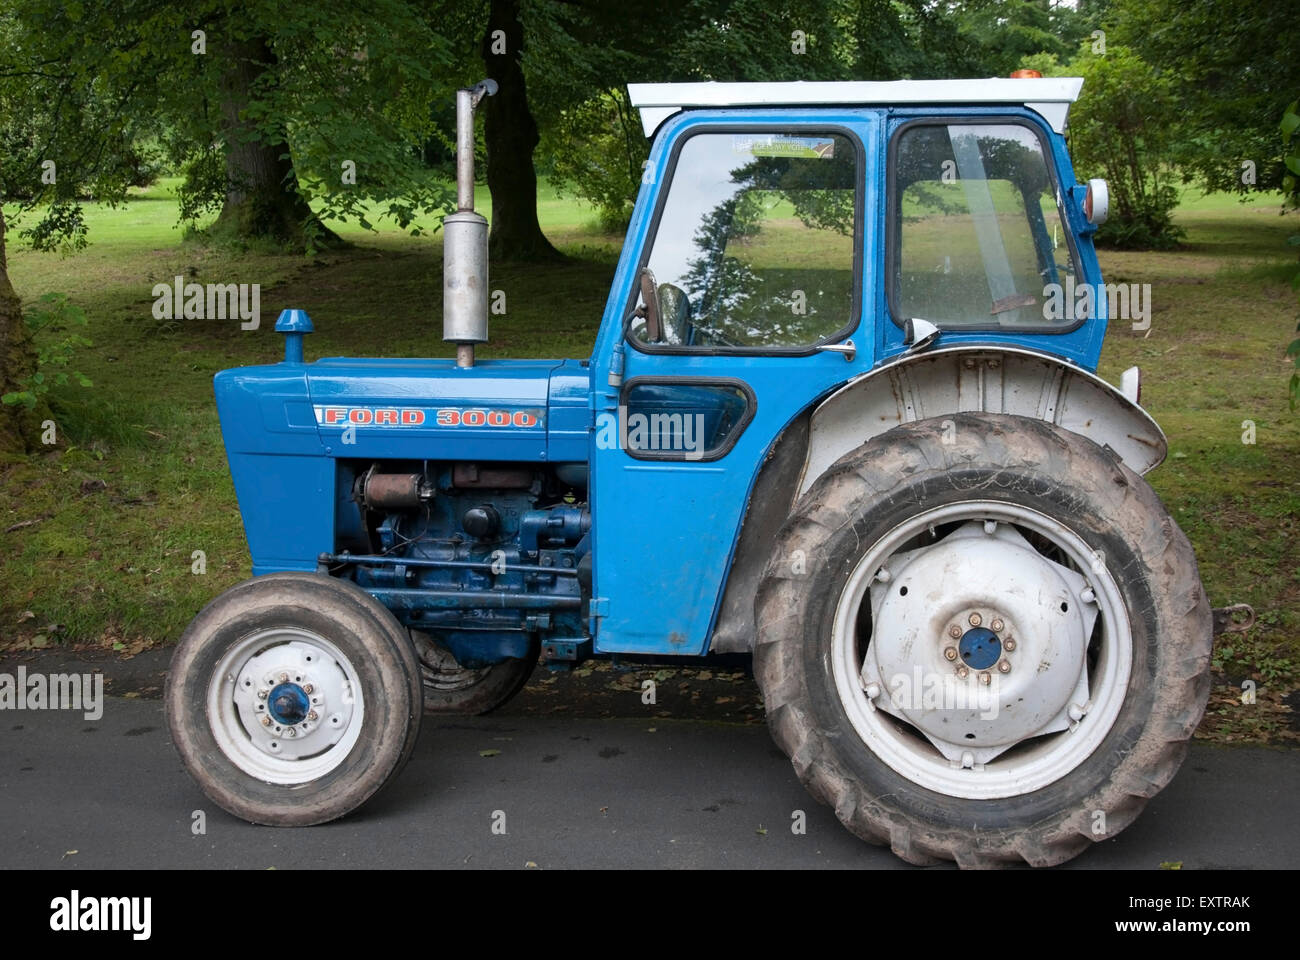 Blue ford tractor Banque de photographies et d'images à haute résolution -  Page 2 - Alamy